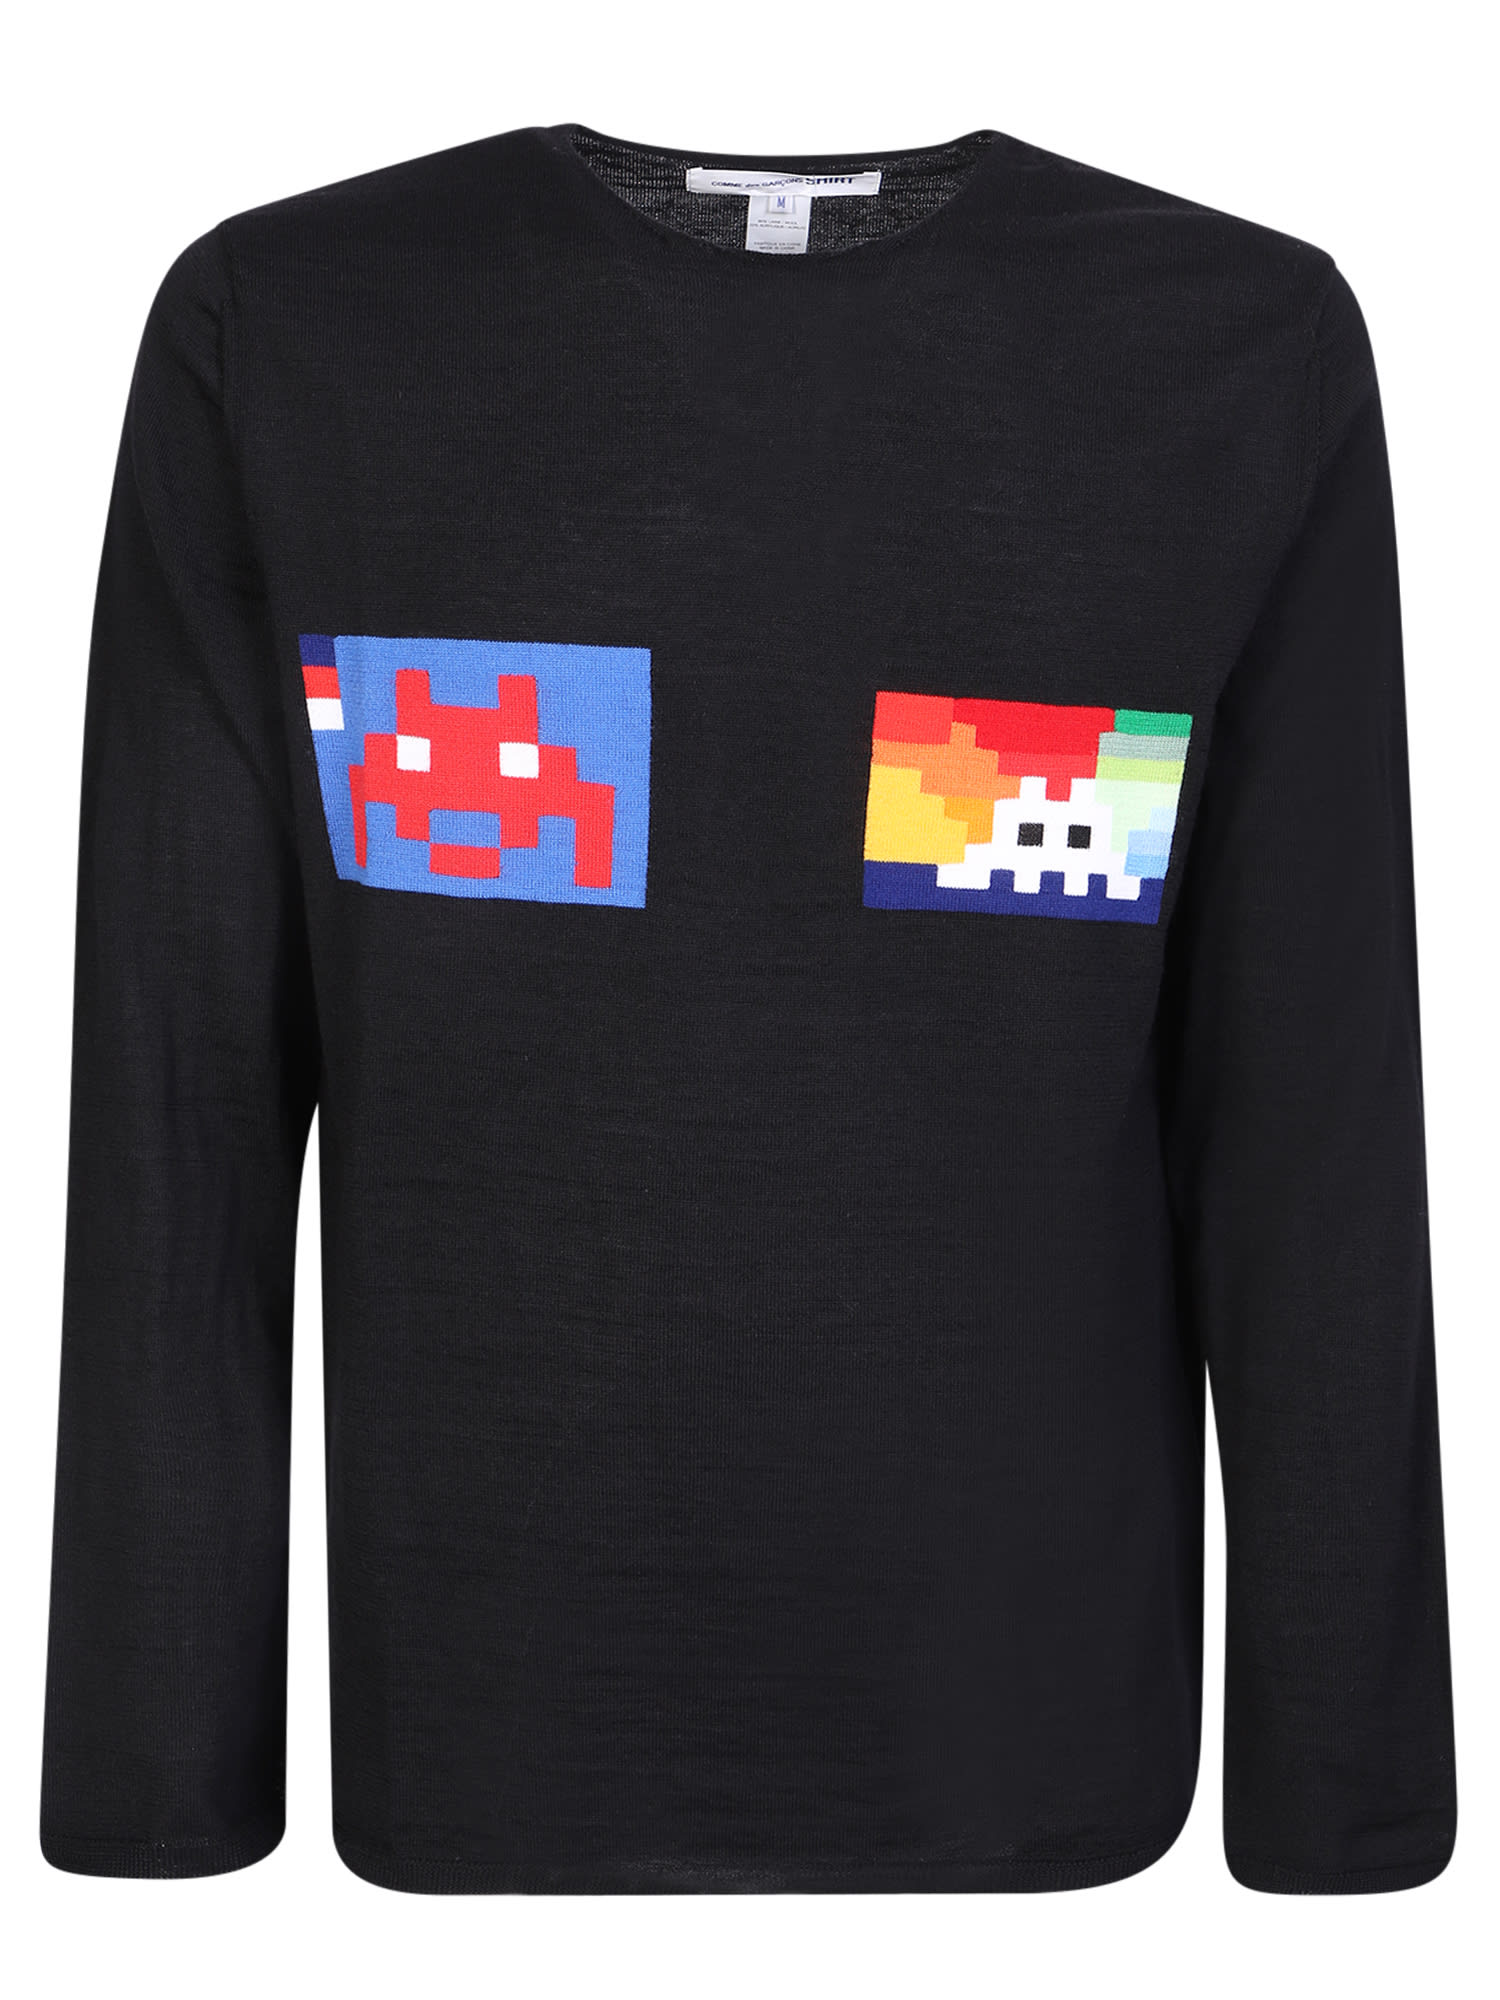 Pixel Print Sweater Comme Des Garcons Shirt Black